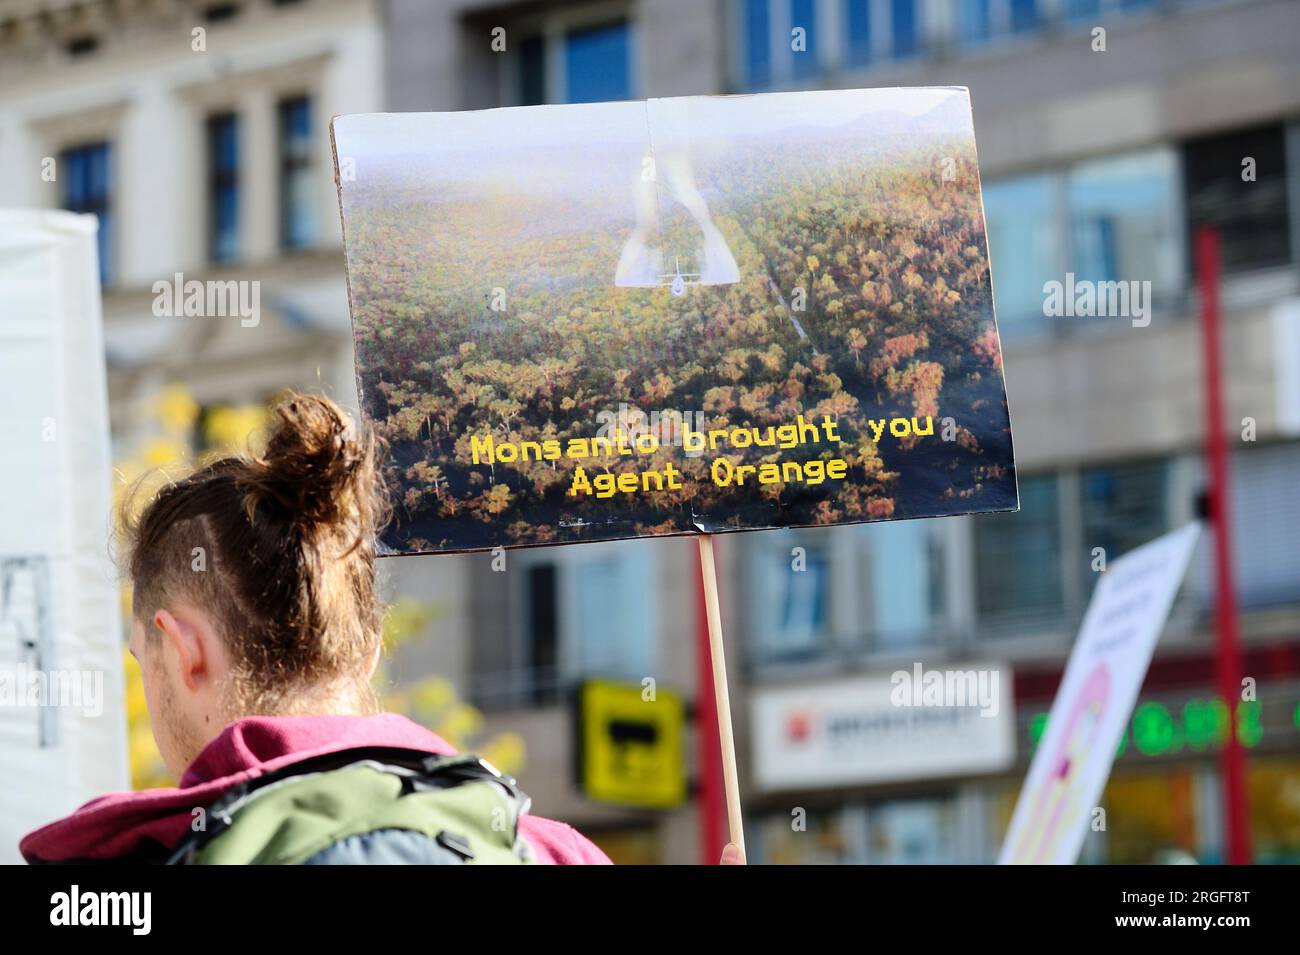 Vienna, Austria. 12 ottobre 2013. marcia globale contro Monsanto, raduno di Vienna Foto Stock